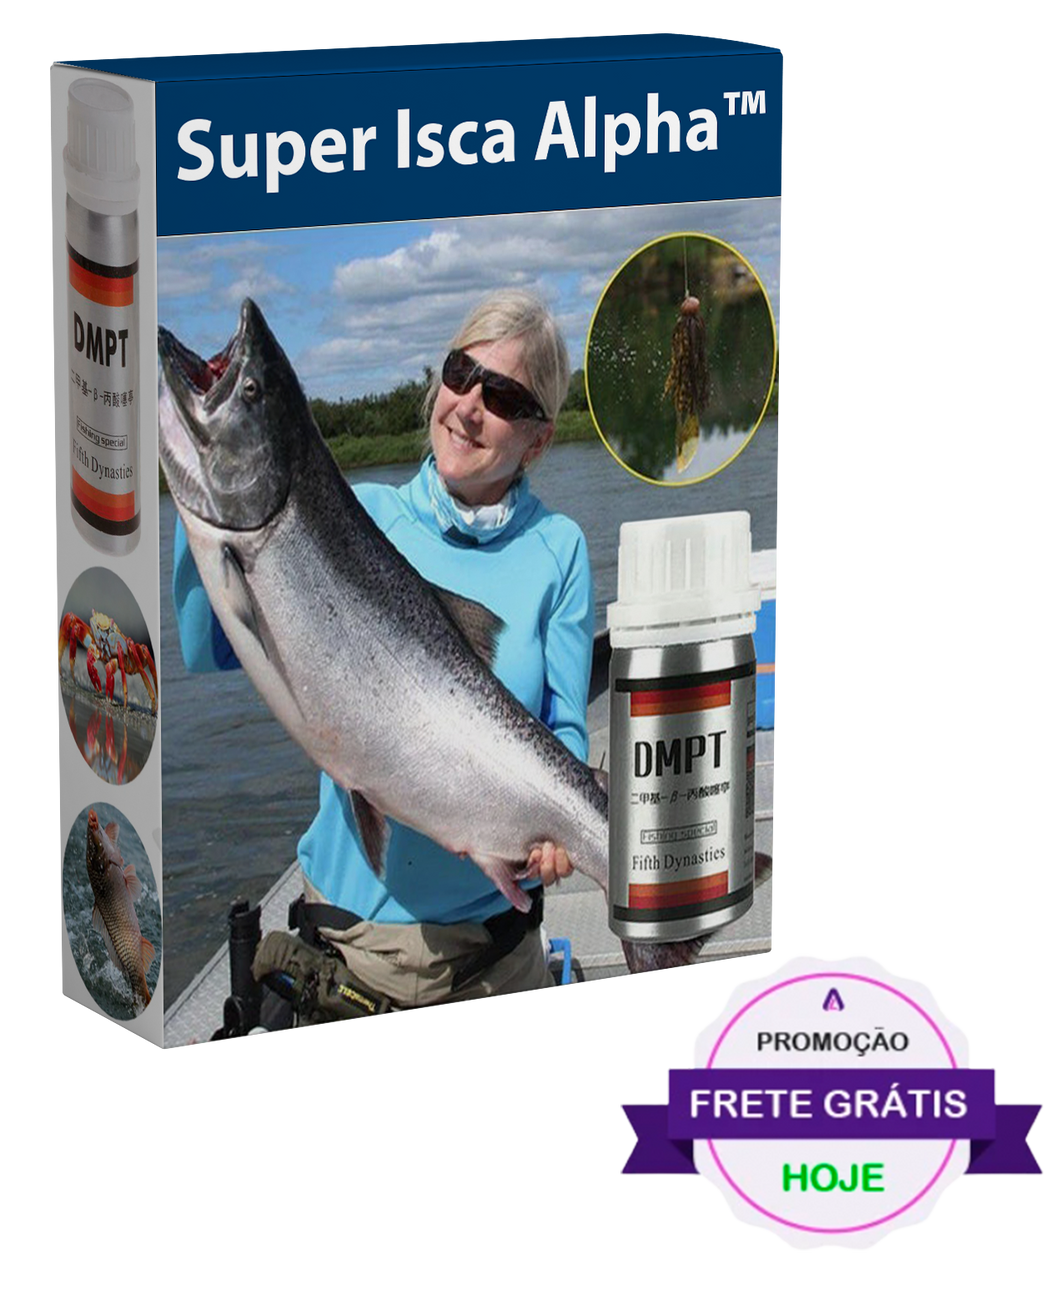 Super Isca Alpha™ - Pesque dezenas de quilos de pescado com essa incrível isca